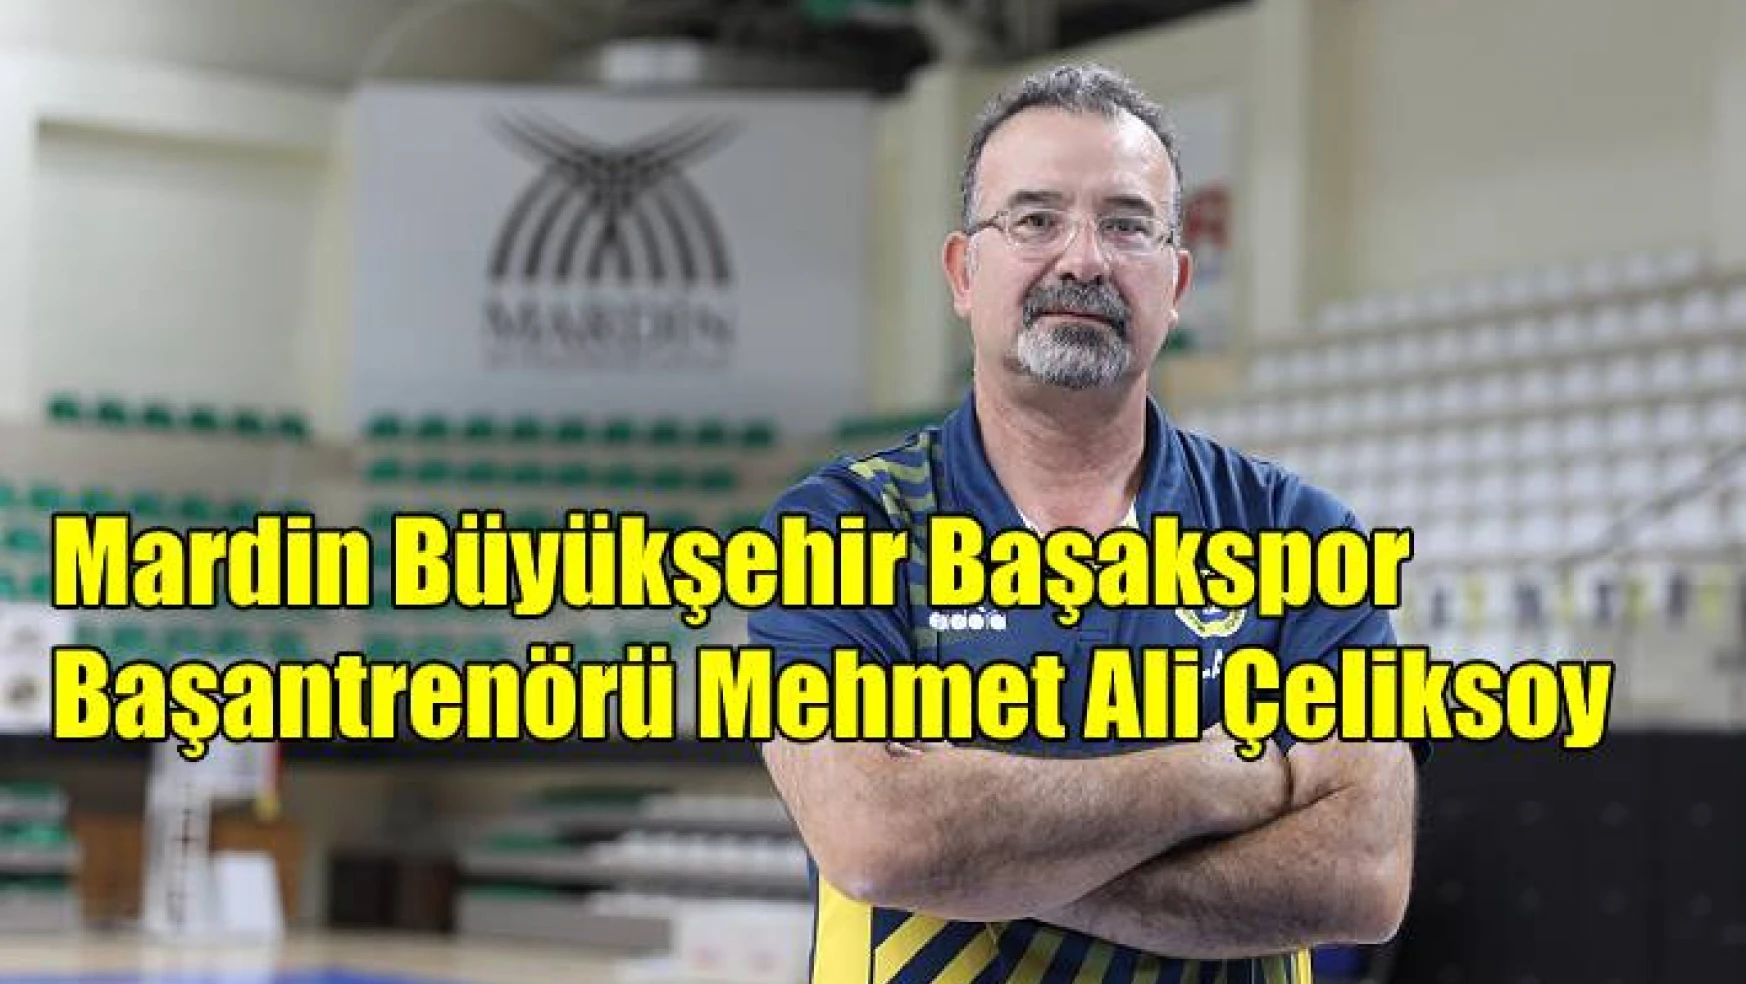 Mehmet Ali Çeliksoy: “Bizler bu tecrübeyi daha yeni kazanıyoruz”